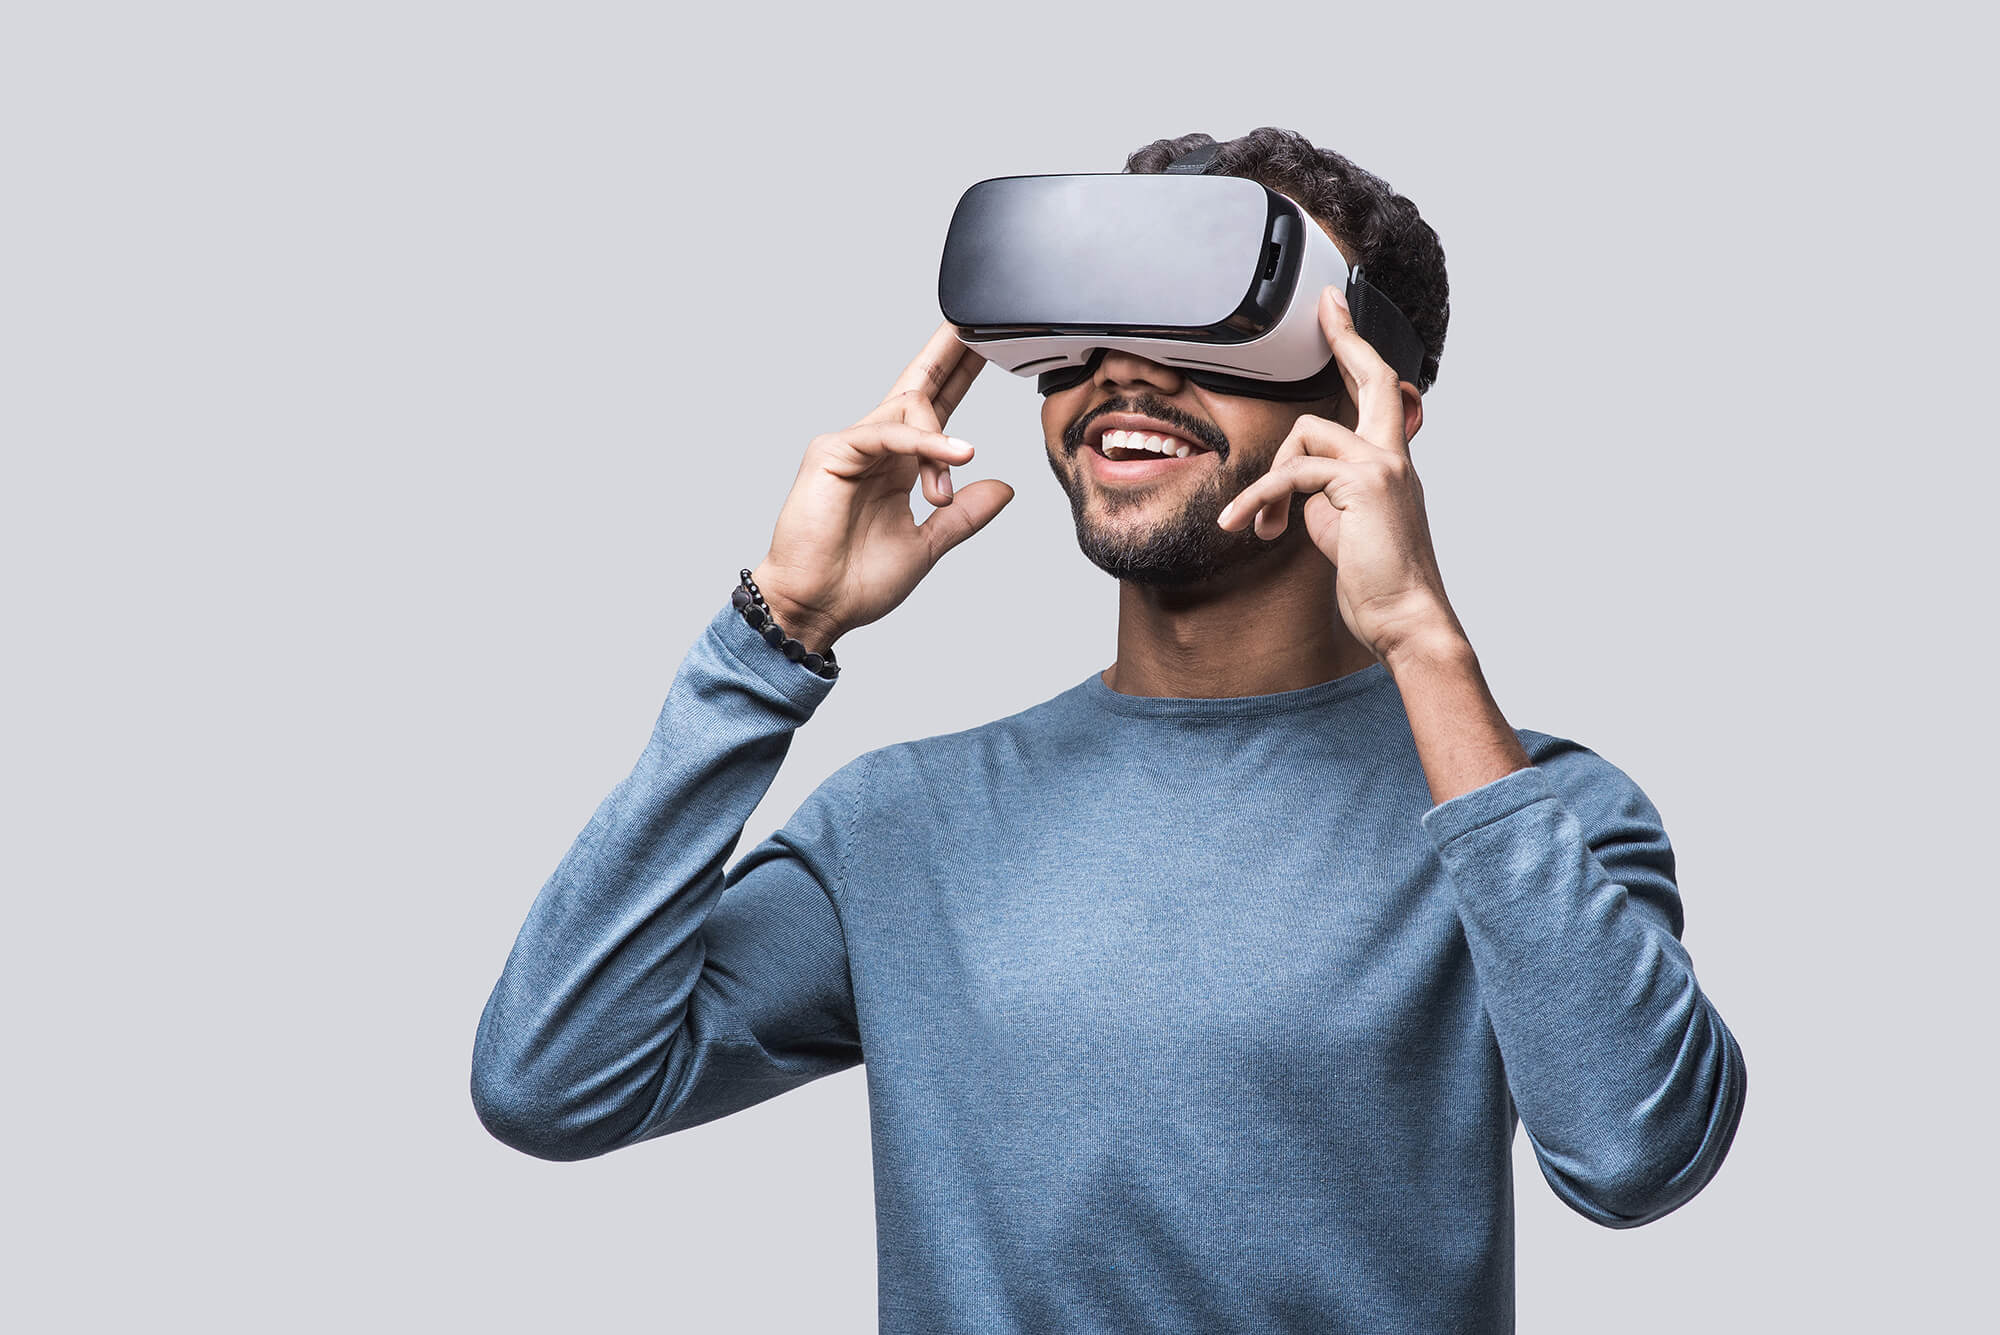 plug duif zeil Met VR sneller naar een passende baan?